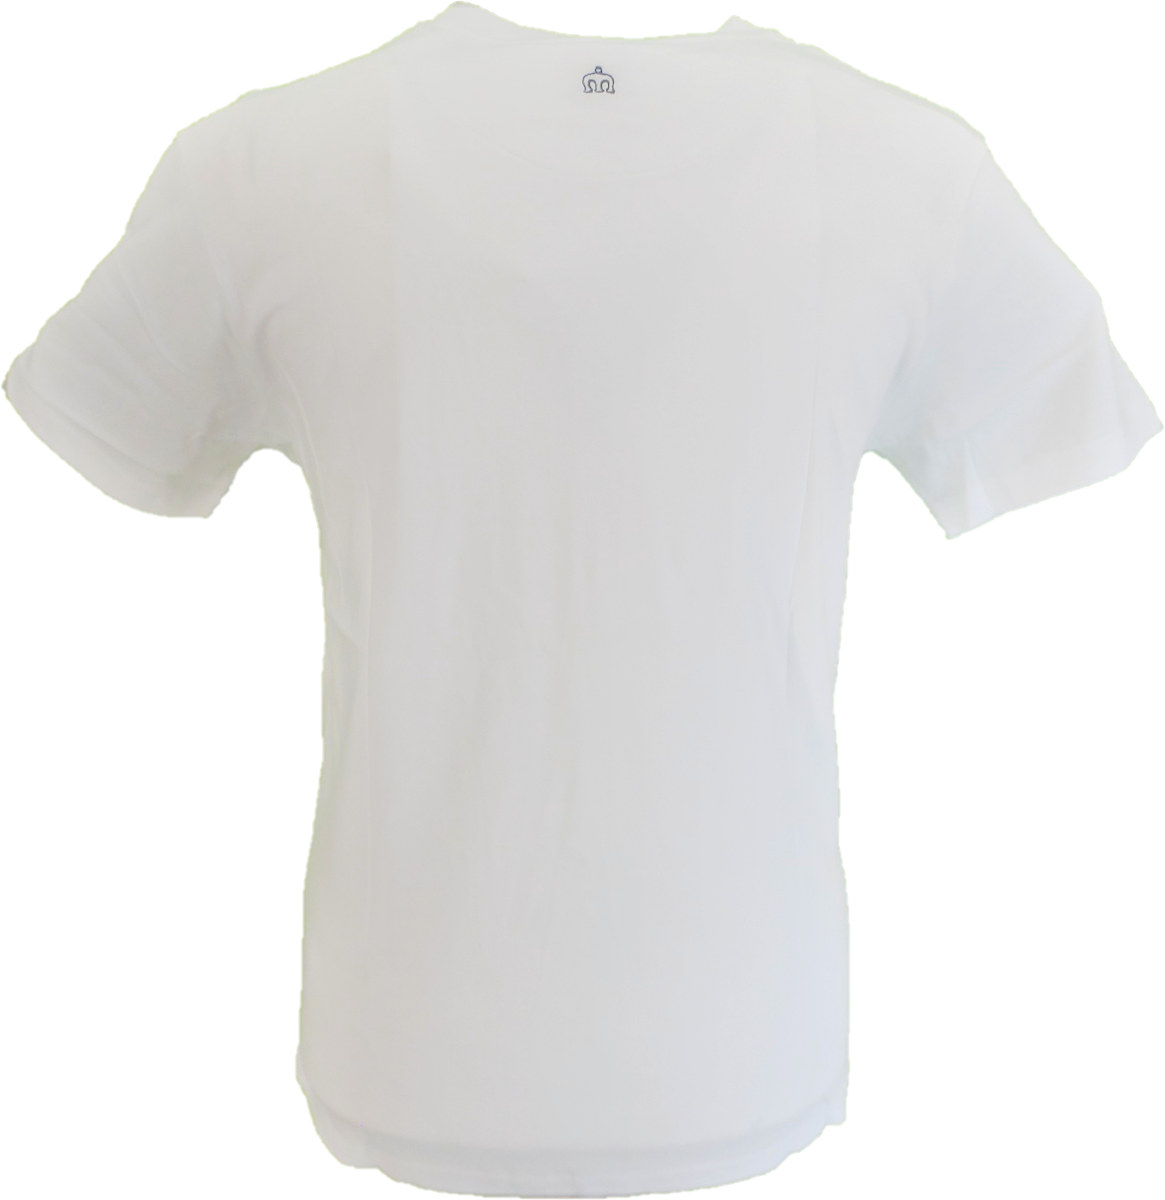 Camiseta blanca costello para hombre Merc London